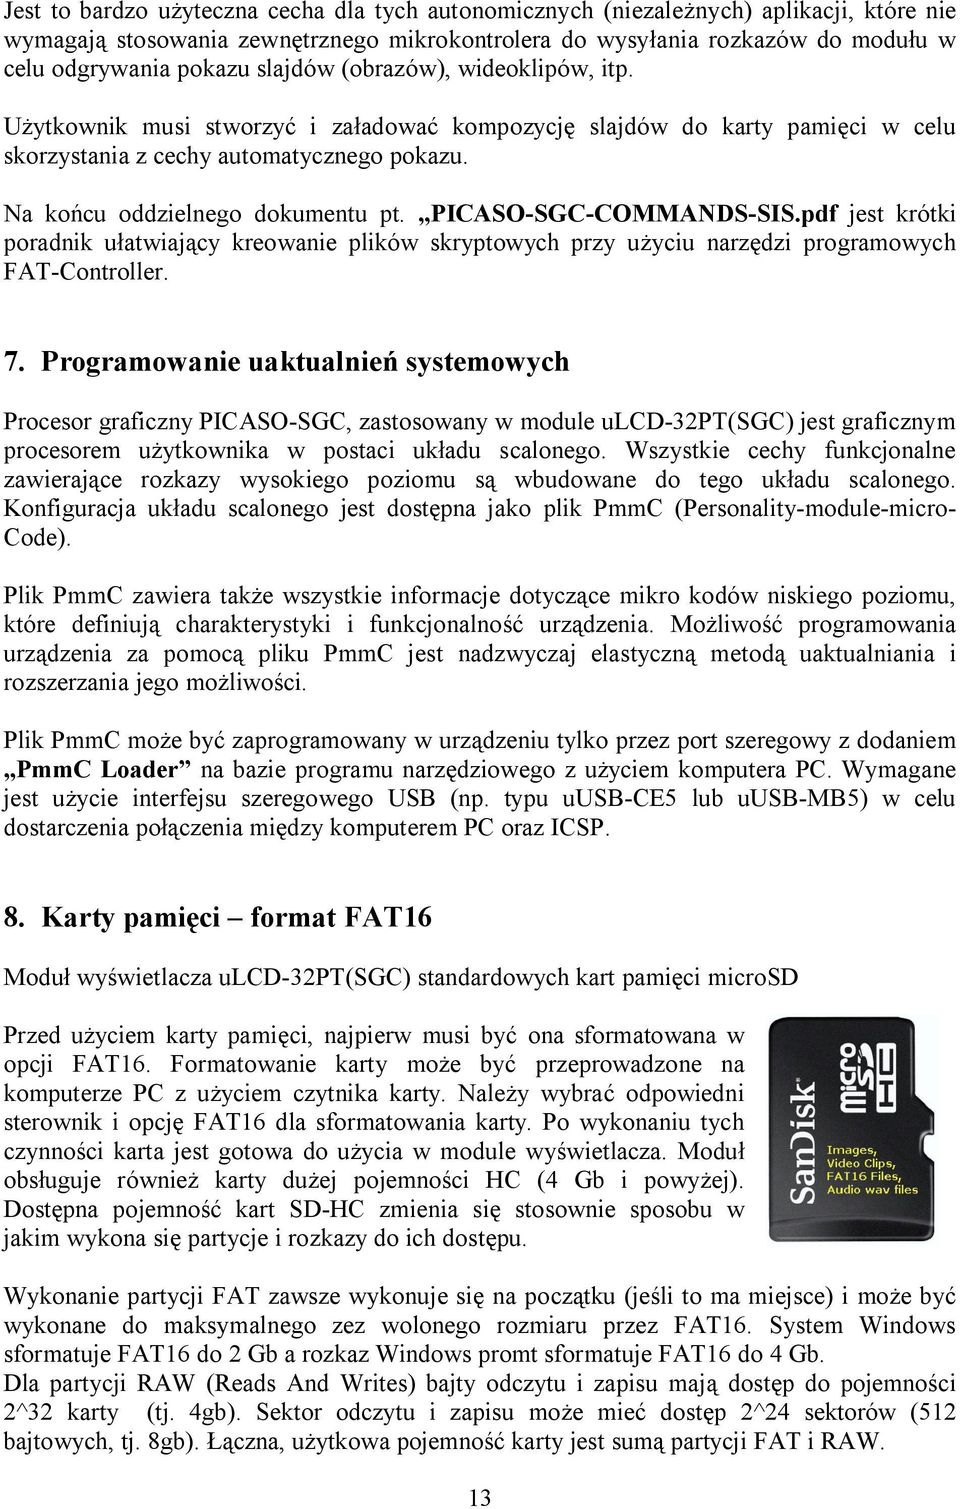 PICASO-SGC-COMMANDS-SIS.pdf jest krótki poradnik ułatwiający kreowanie plików skryptowych przy użyciu narzędzi programowych FAT-Controller. 7.